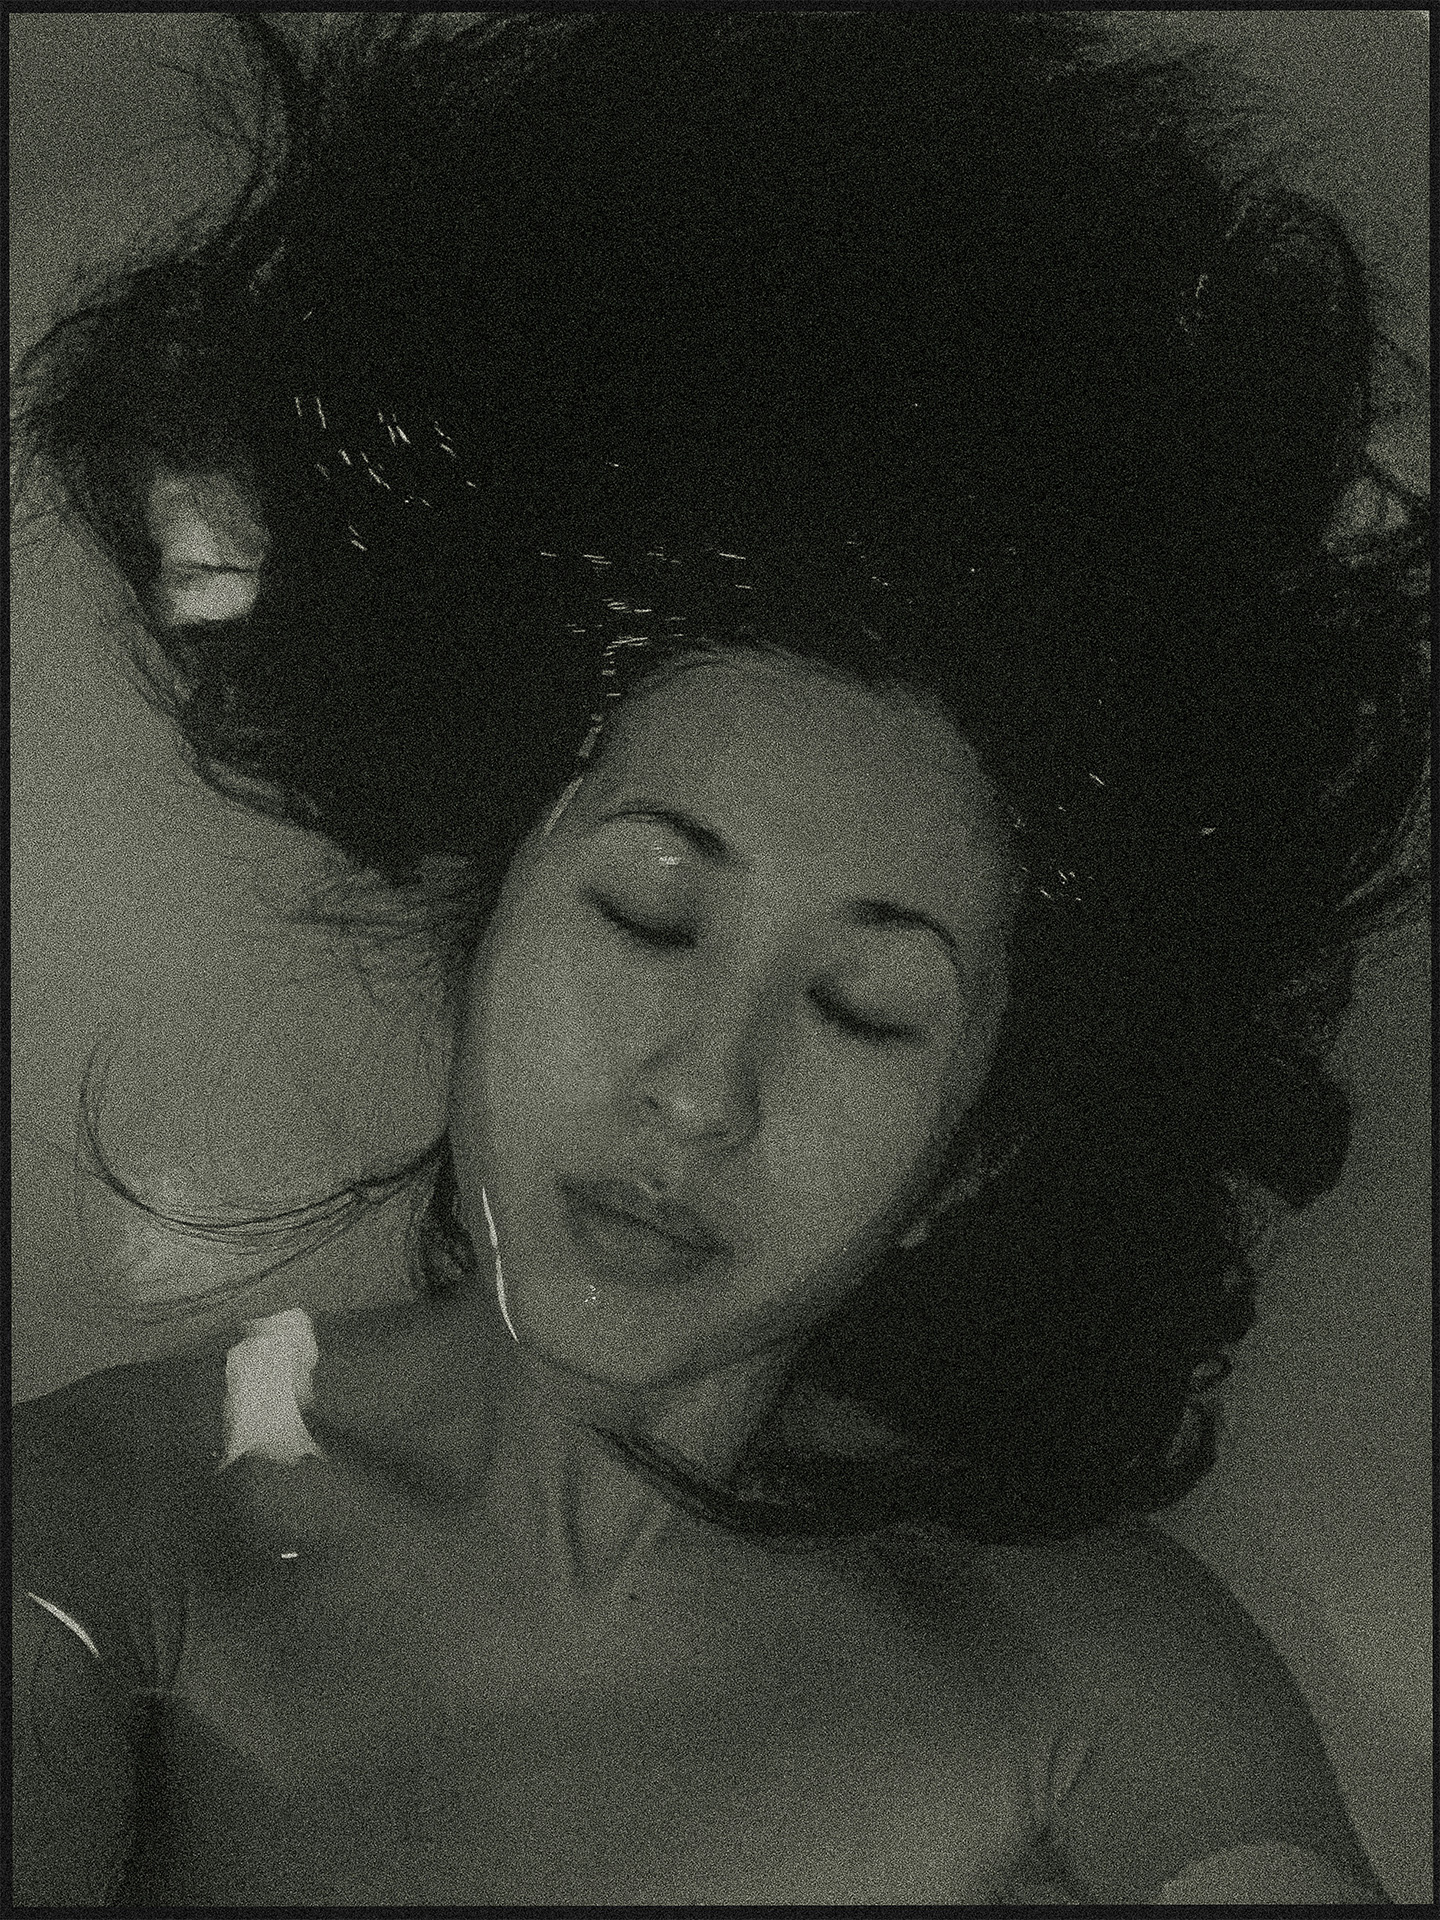 Haruka Sakaguchi, digital photograph